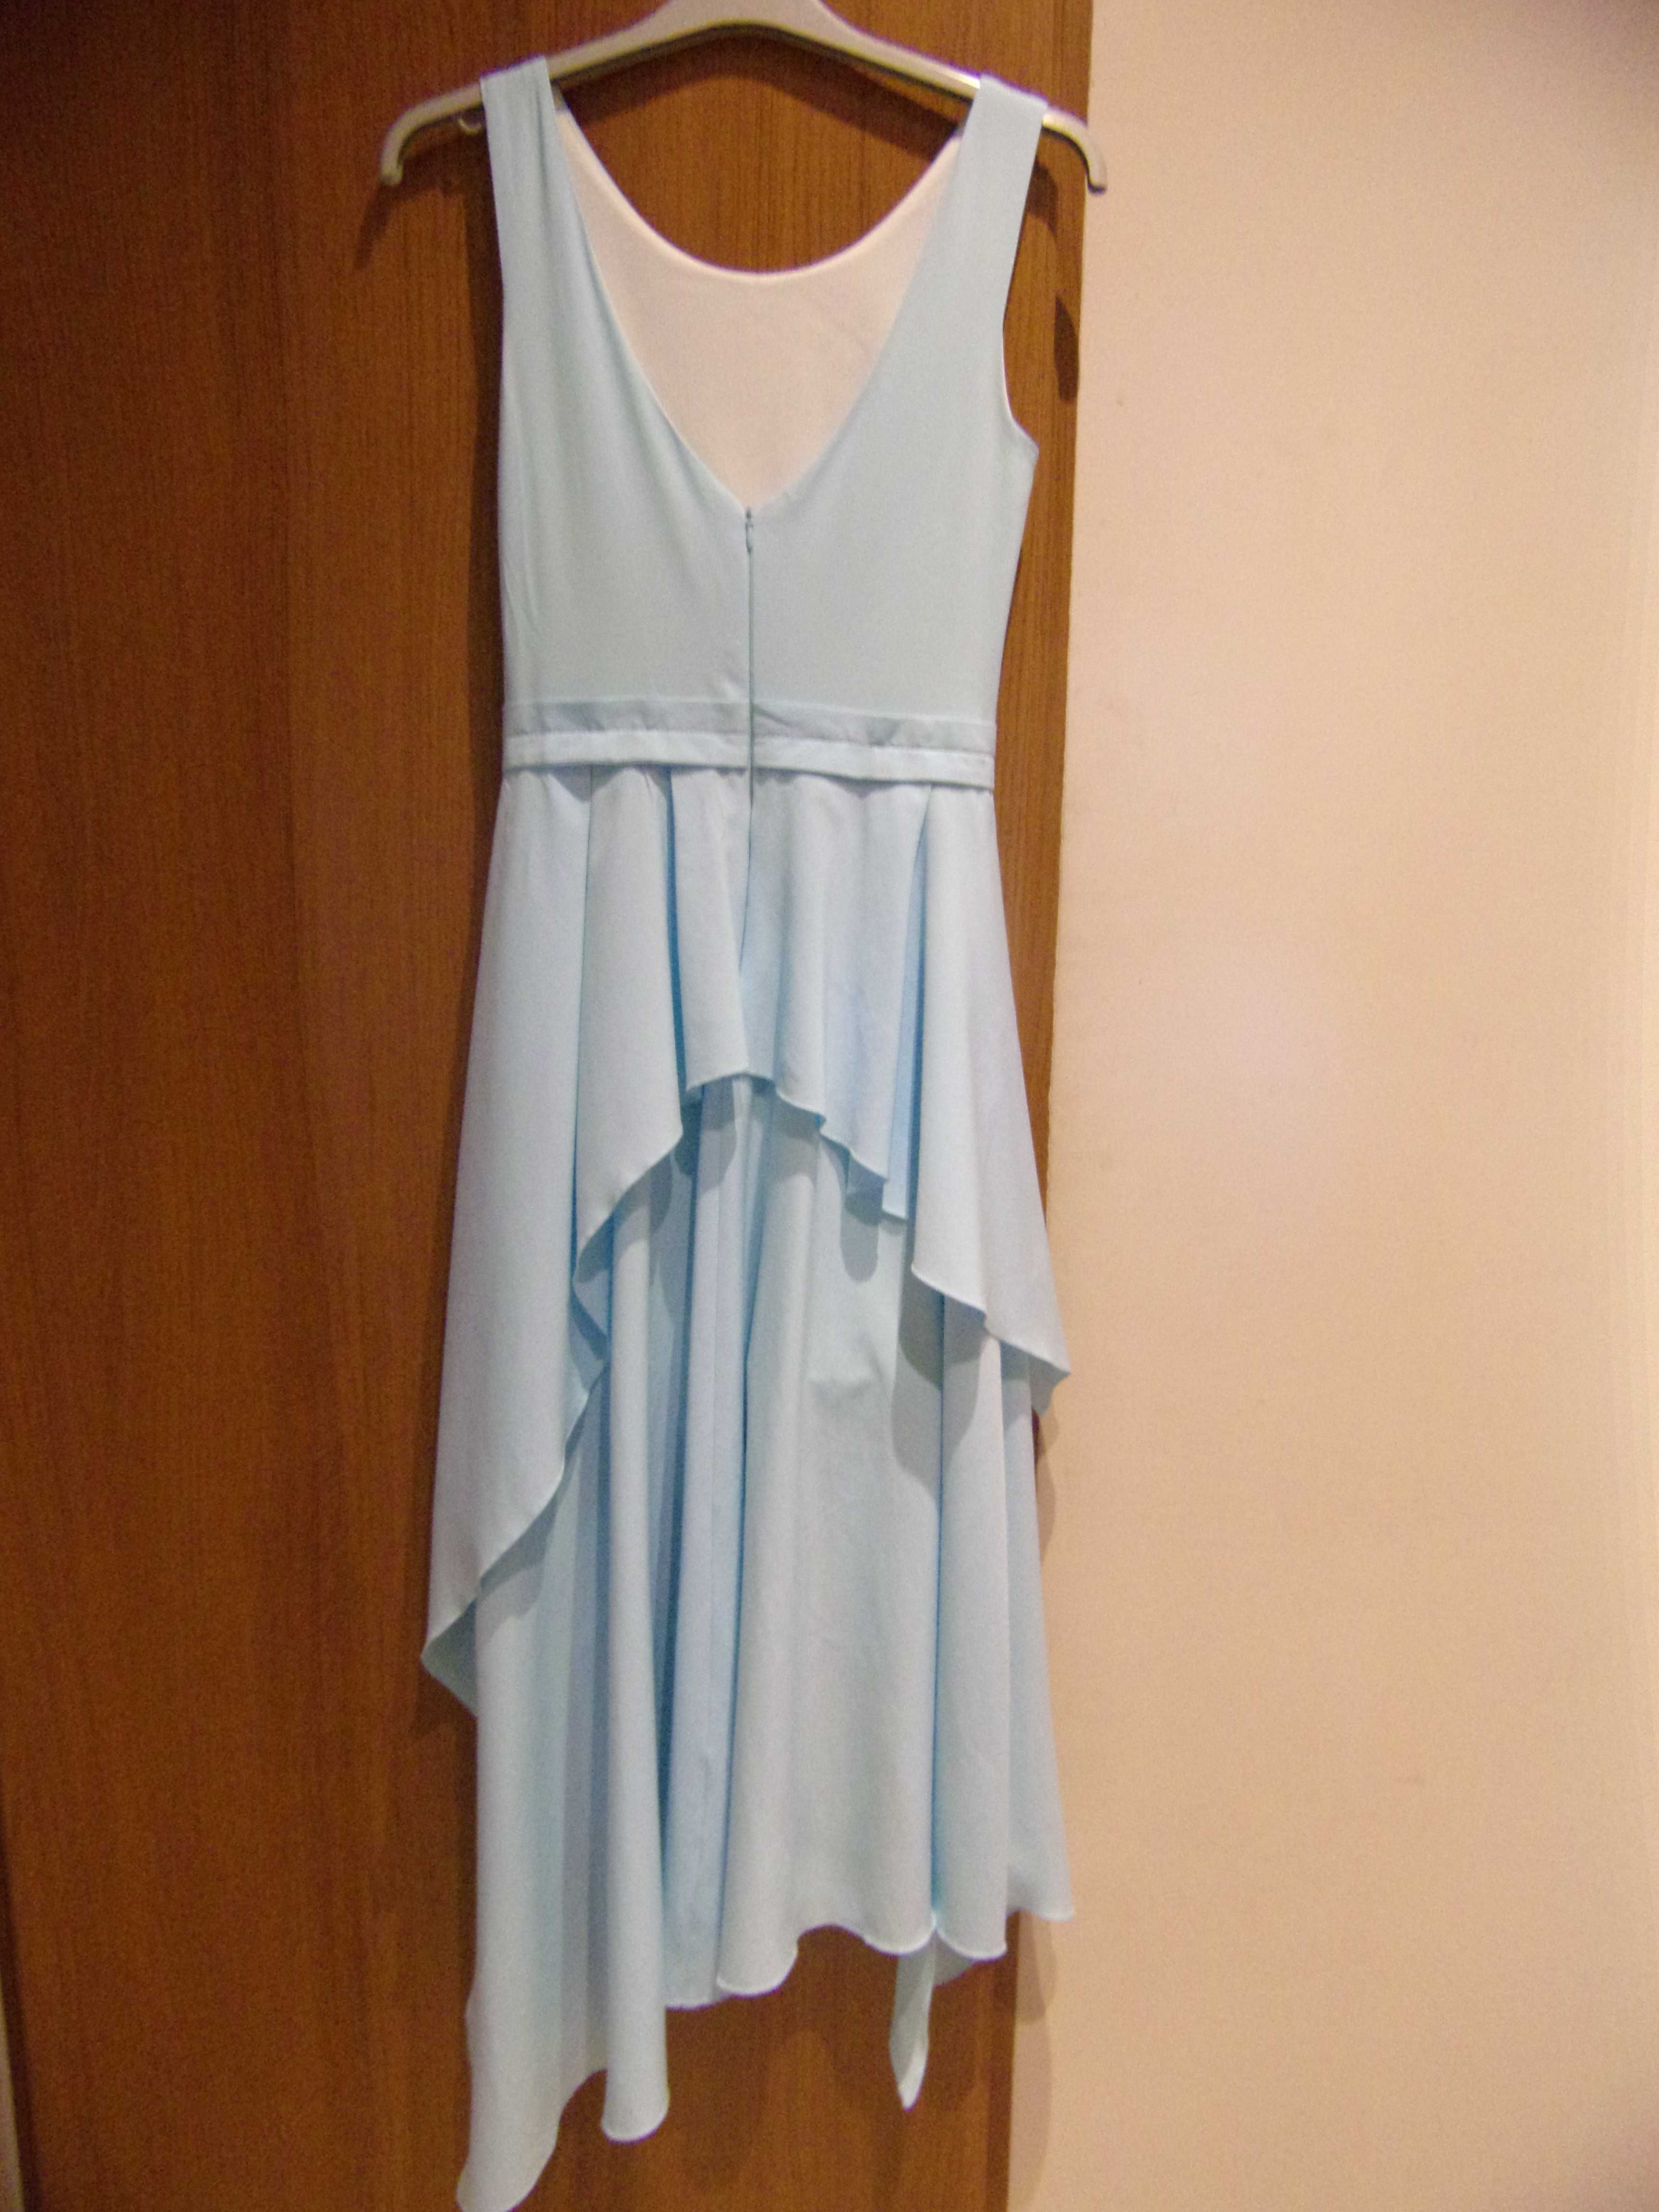 Sukienka jasnoniebieska (błękitna) maxi, długa rozm. 34/36